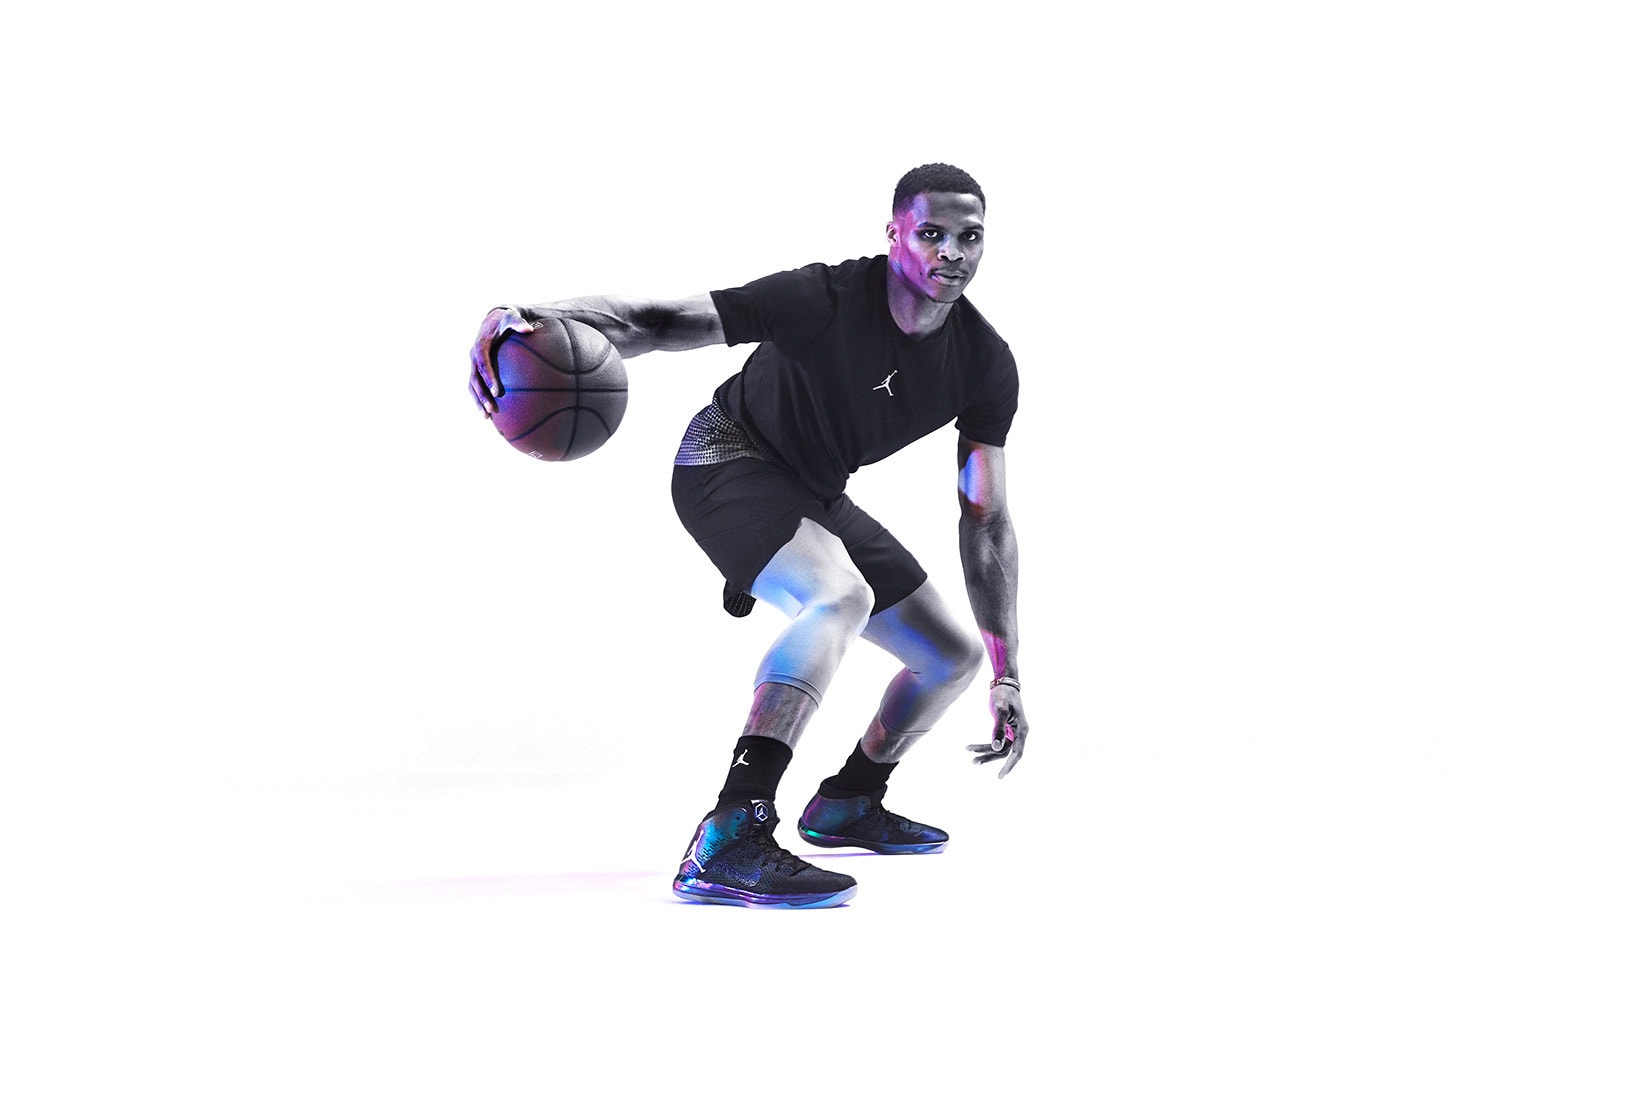 ジョーダンブランドによる NBAオールスター2017 仕様の Air Jordan トリオ